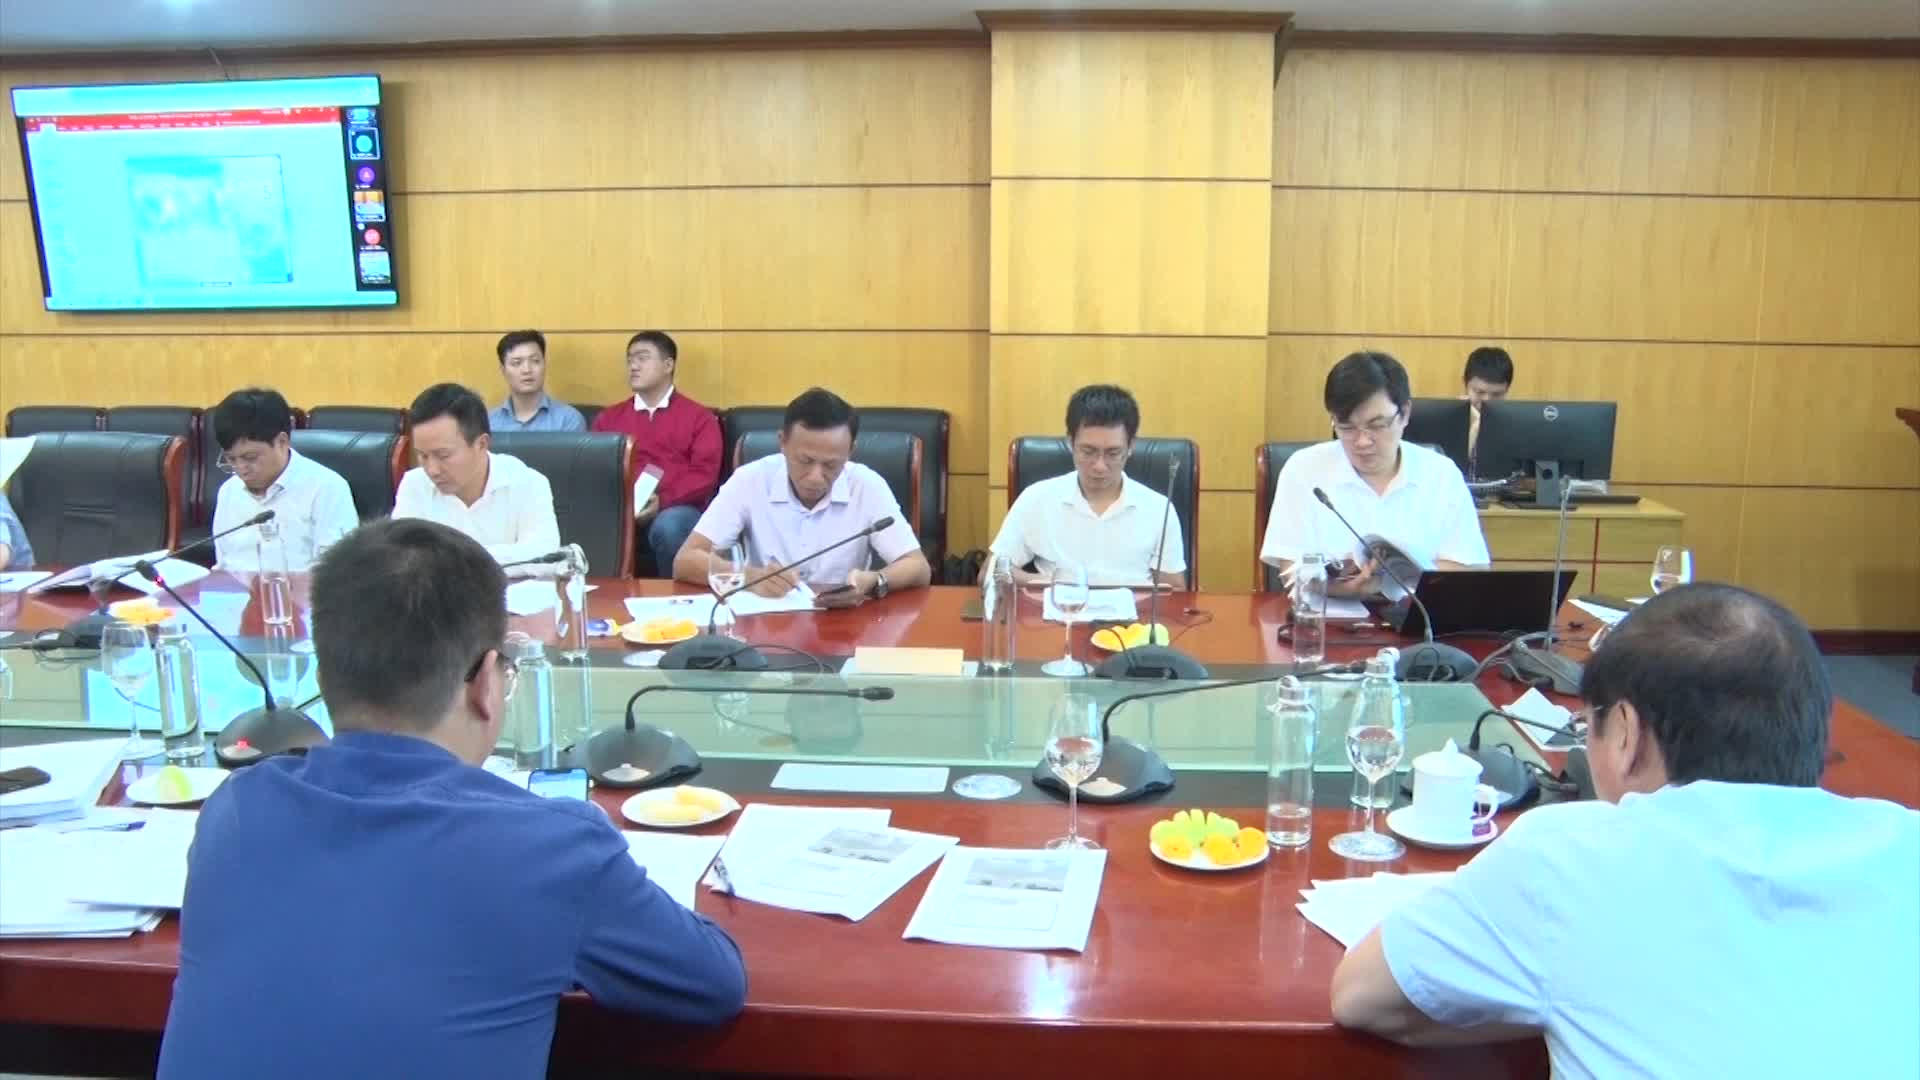 Họp Hội đồng thẩm định liên ngành Quy hoạch tổng hợp Lưu vực sông Hồng - Thái Bình 